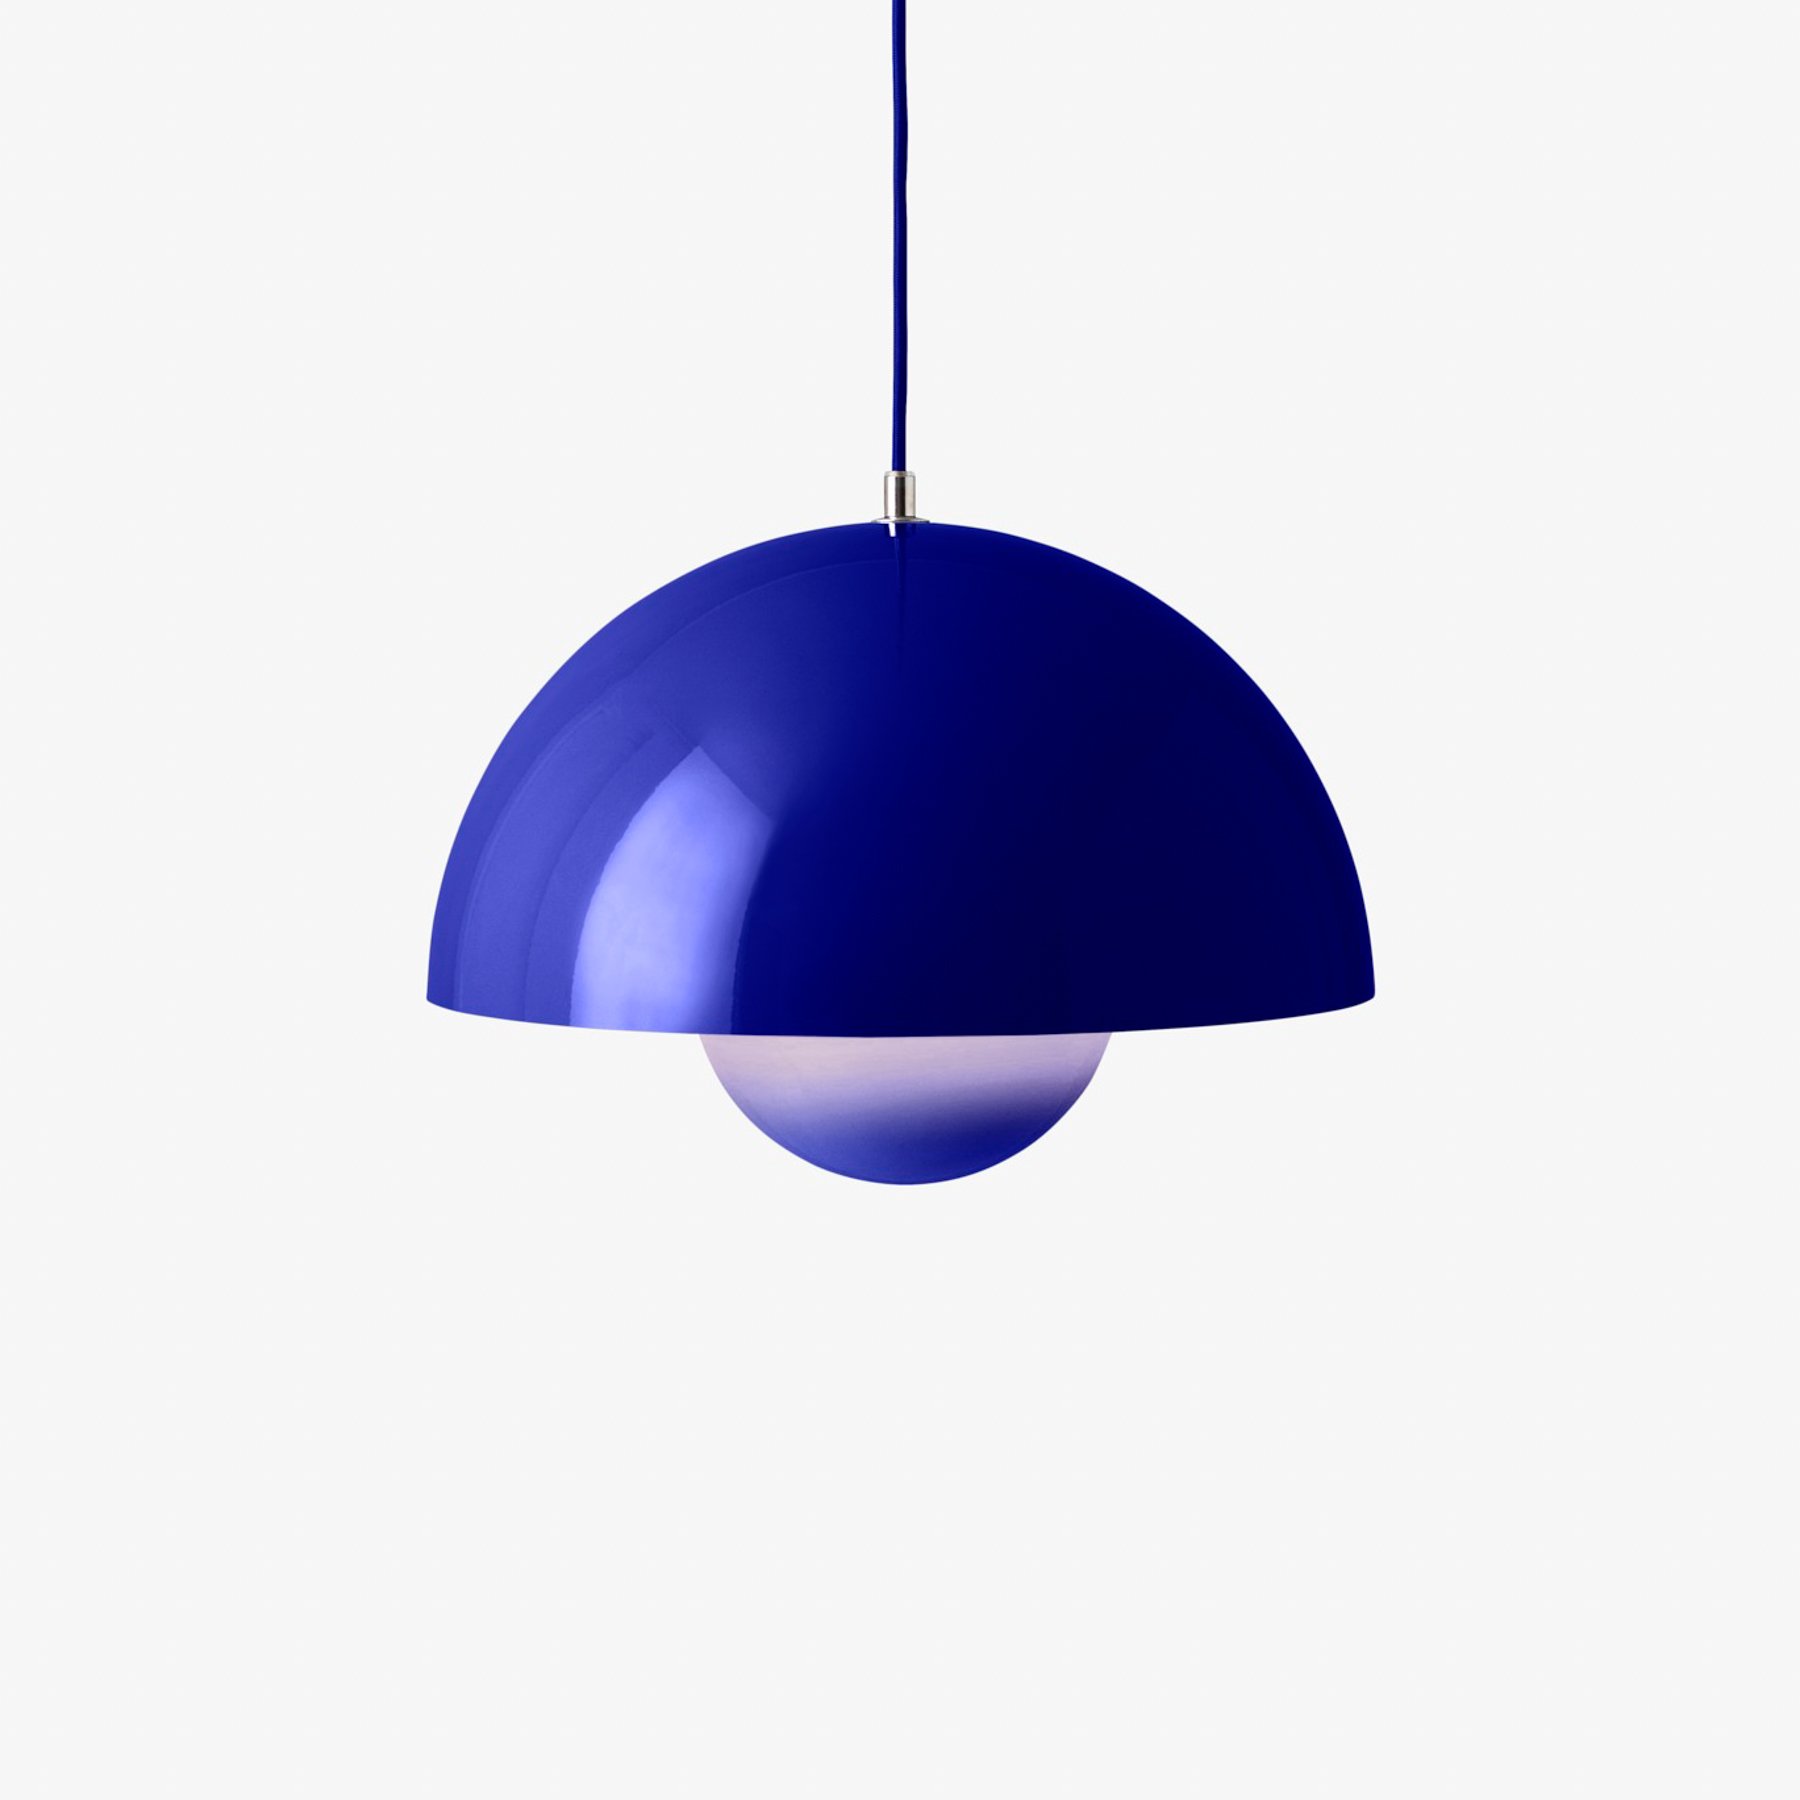 &Tradition viseća svjetiljka Flowerpot VP7, Ø 37 cm, kobaltno plava